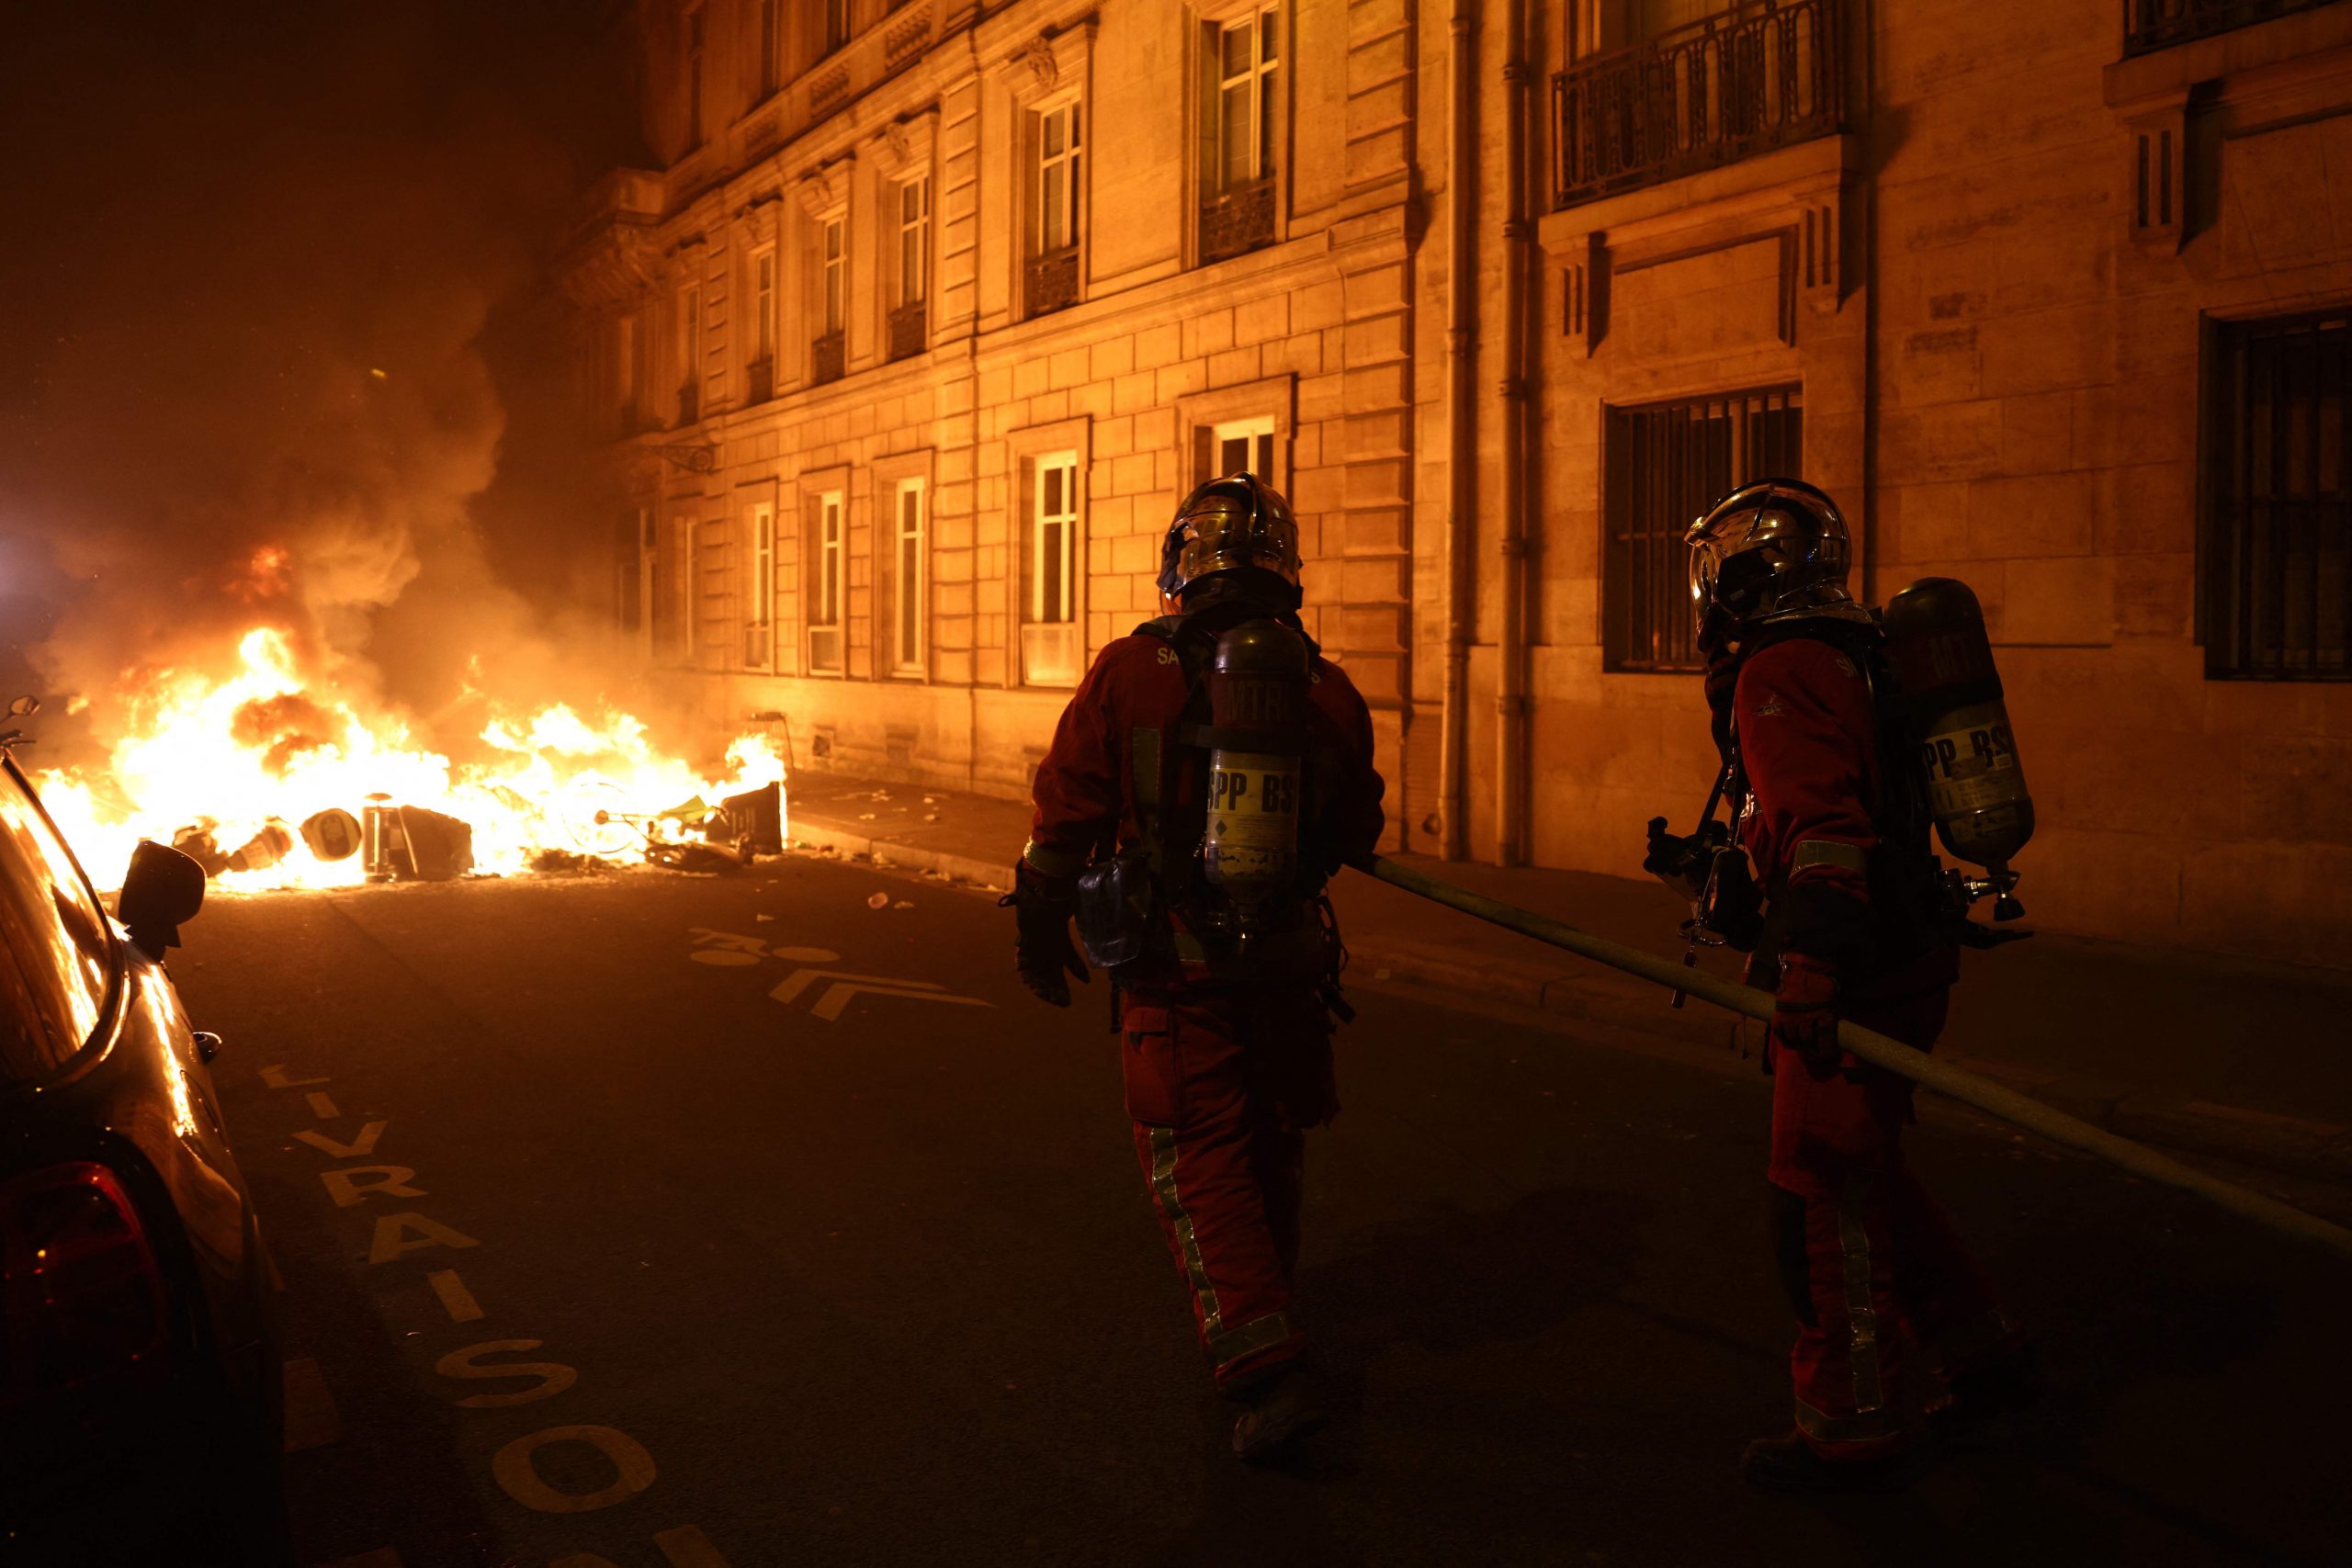 7000人抗议法国退休改革法案 警方施放催泪弹